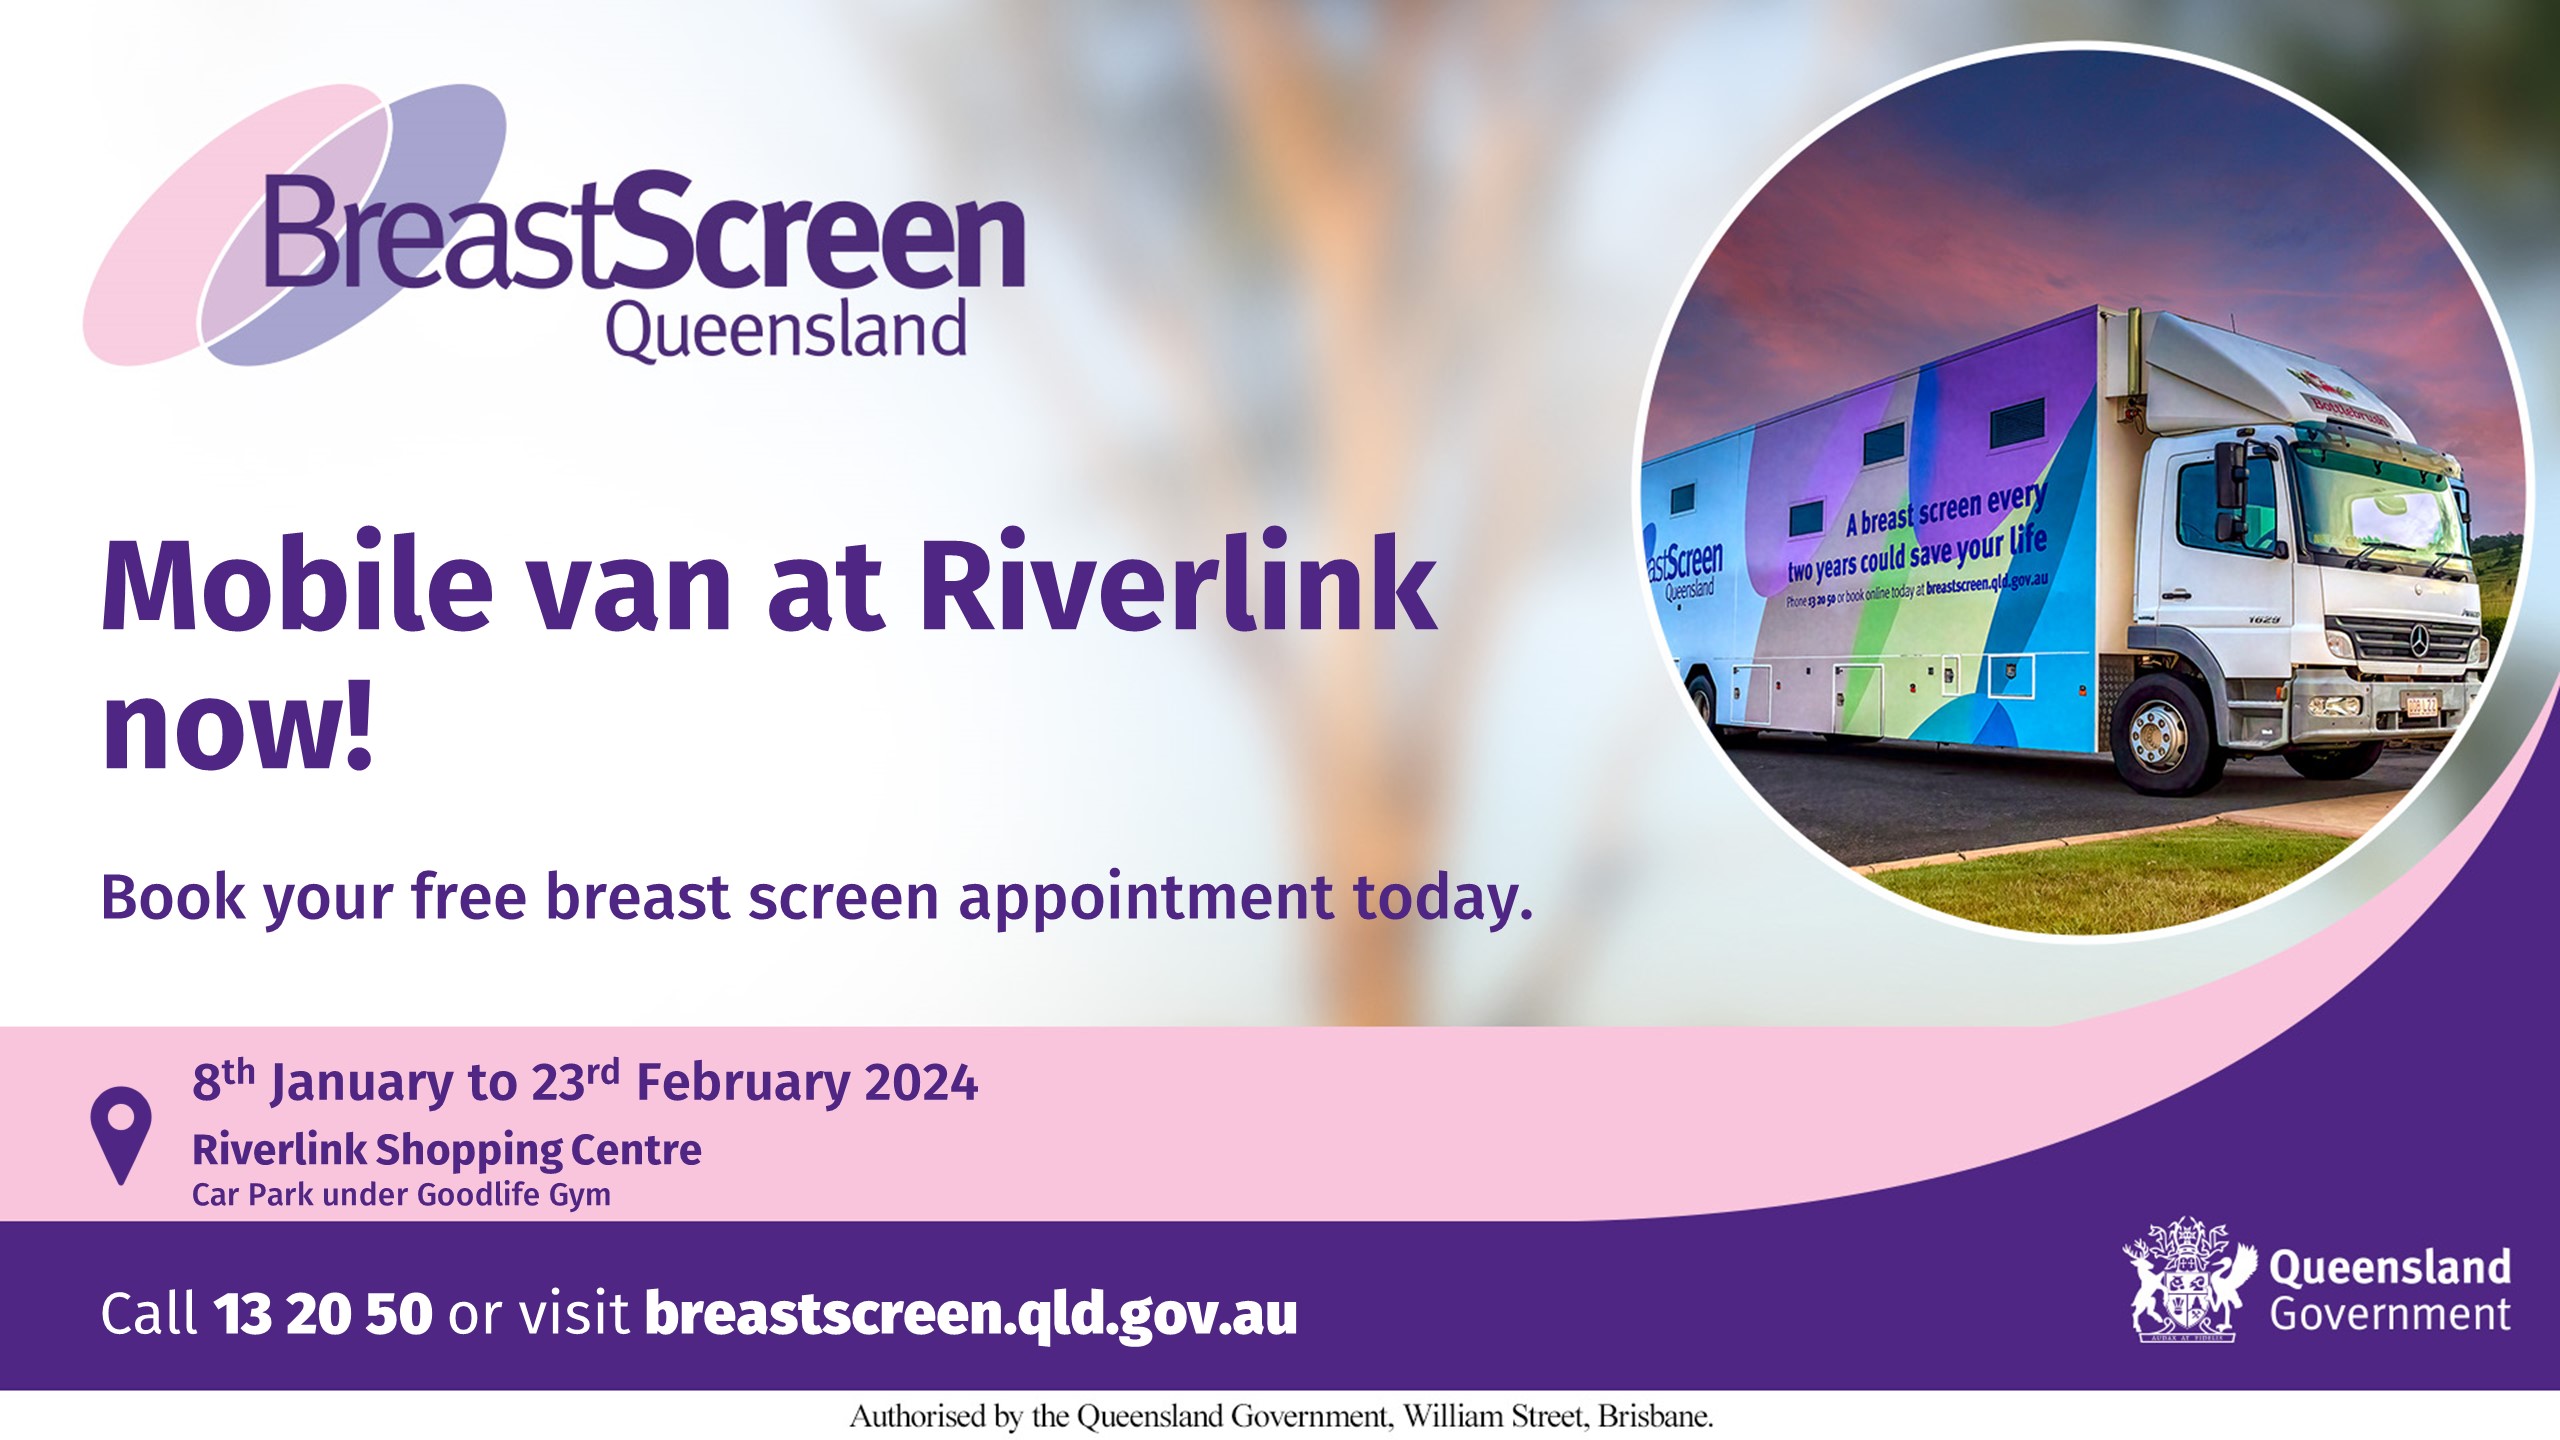 Breast Screen Van at Riverlink